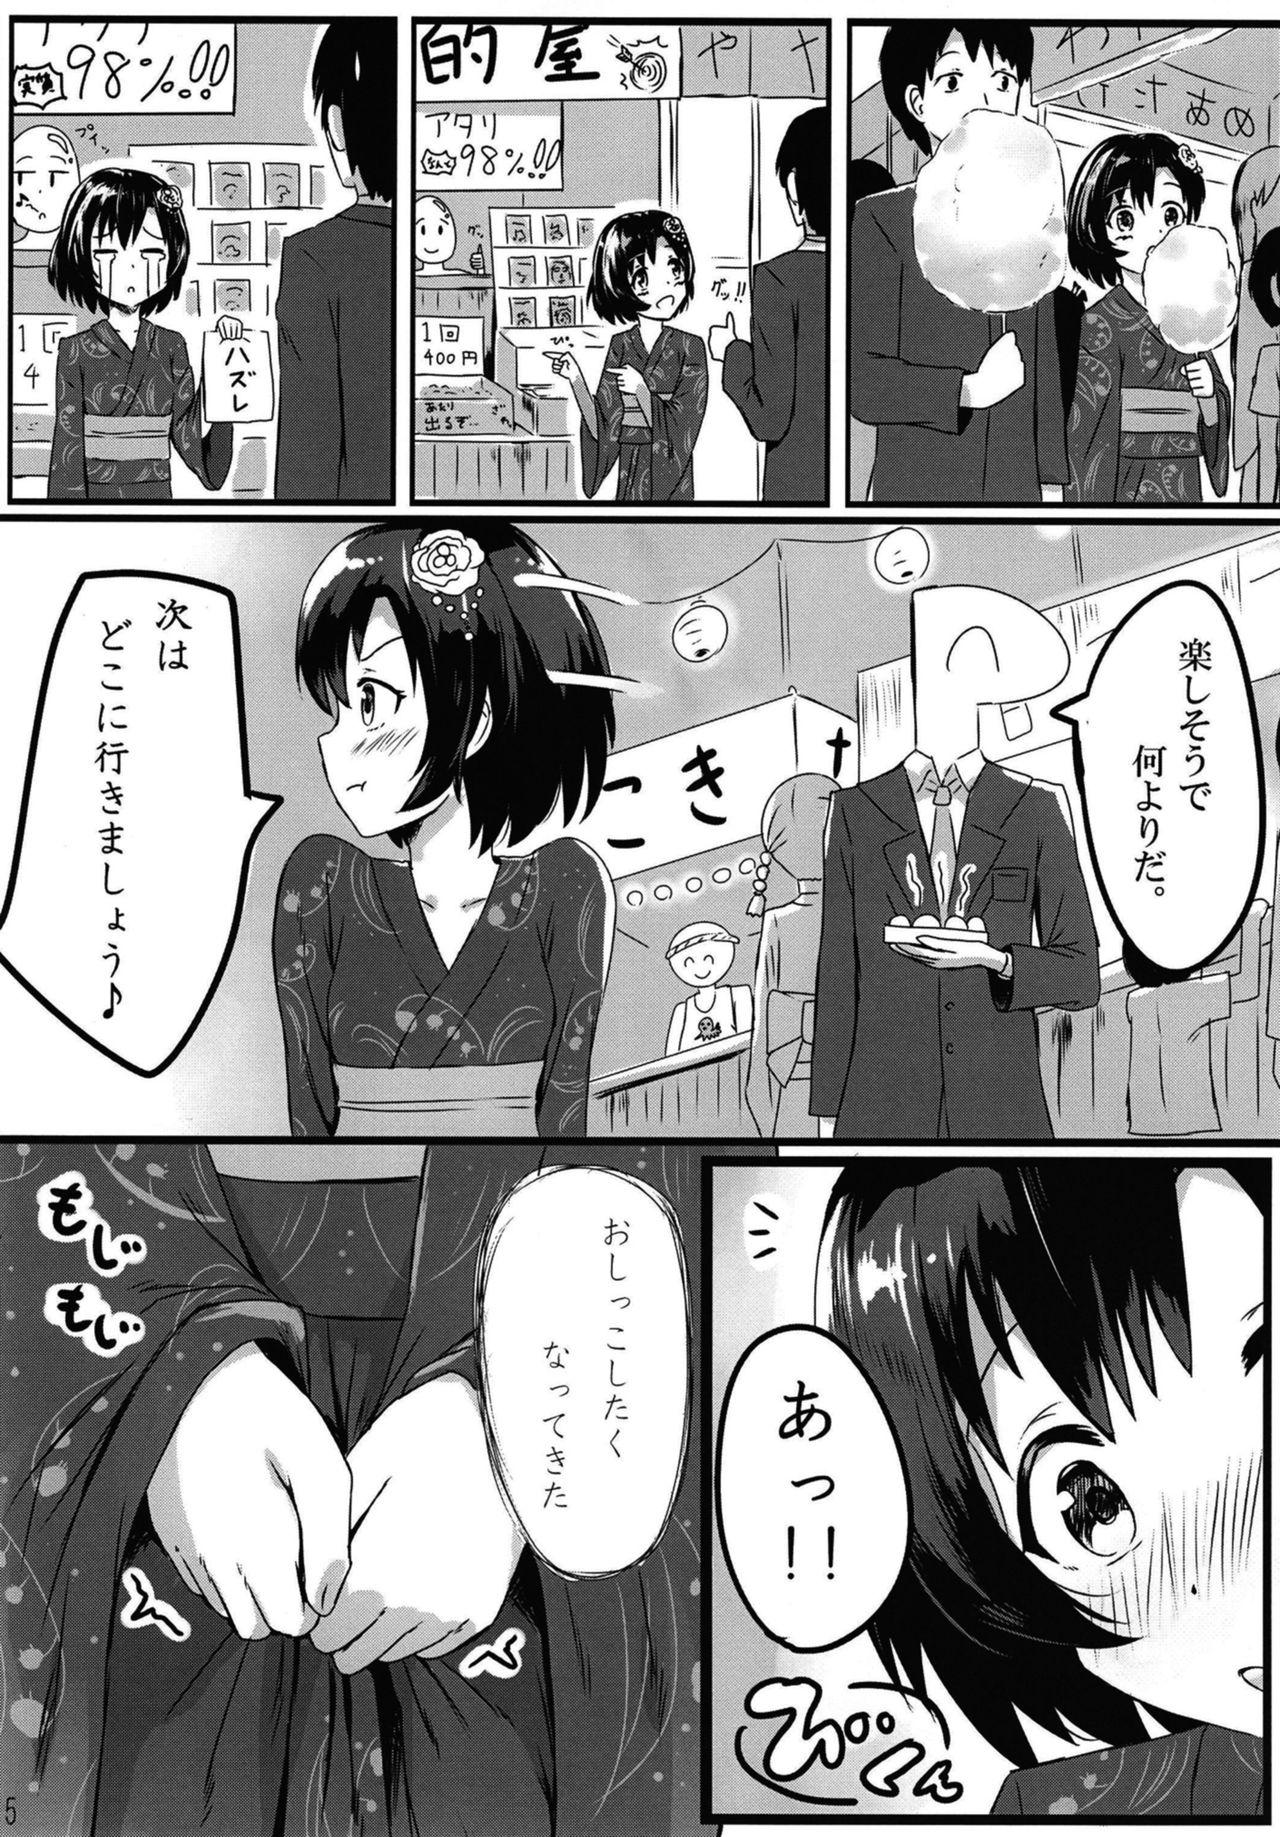 Secretary Shiragiku Hotaru no kore o Mitemo... Kirai ni naranai de Kudasai - The idolmaster Str8 - Page 5